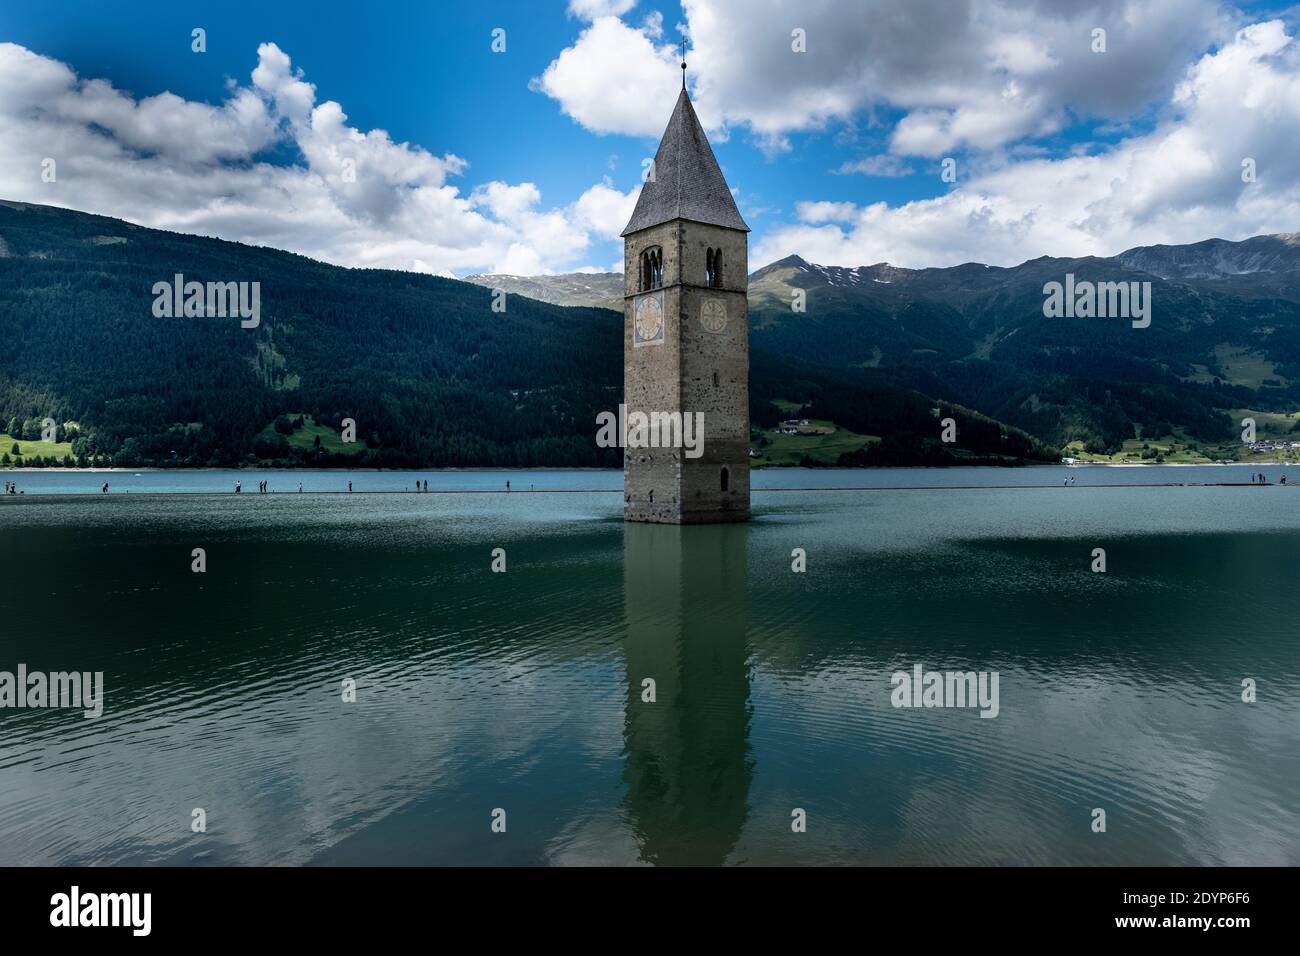 Campanile di Curon Vinschgau oder der Glockenturm von Alt-Graun, Italien. Reschensee, Uhr. Stockfoto